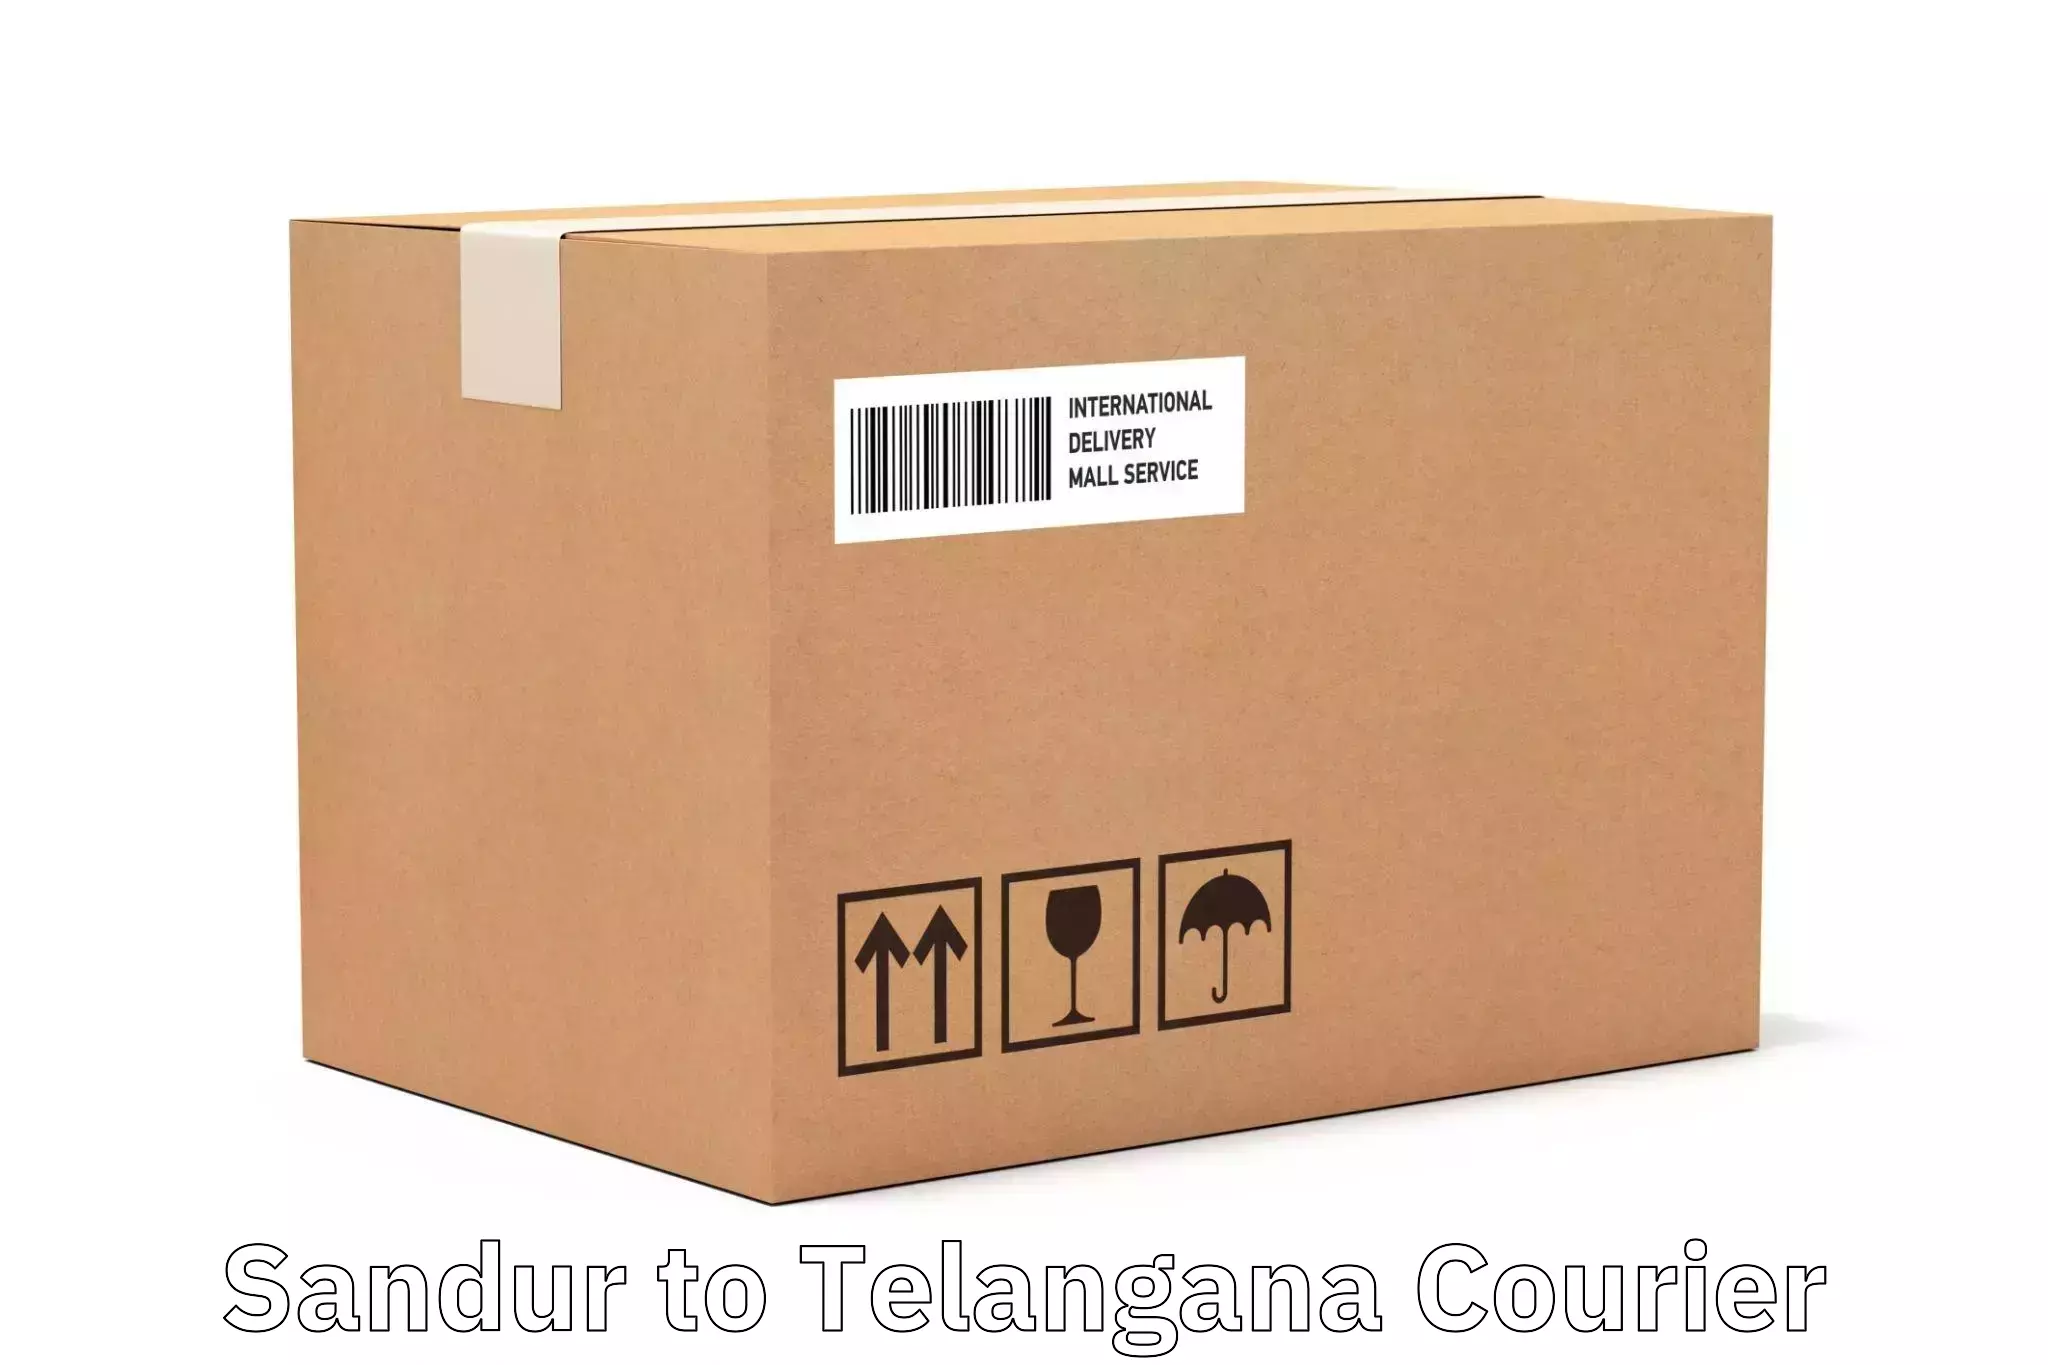 Dynamic courier services Sandur to Kothagudem